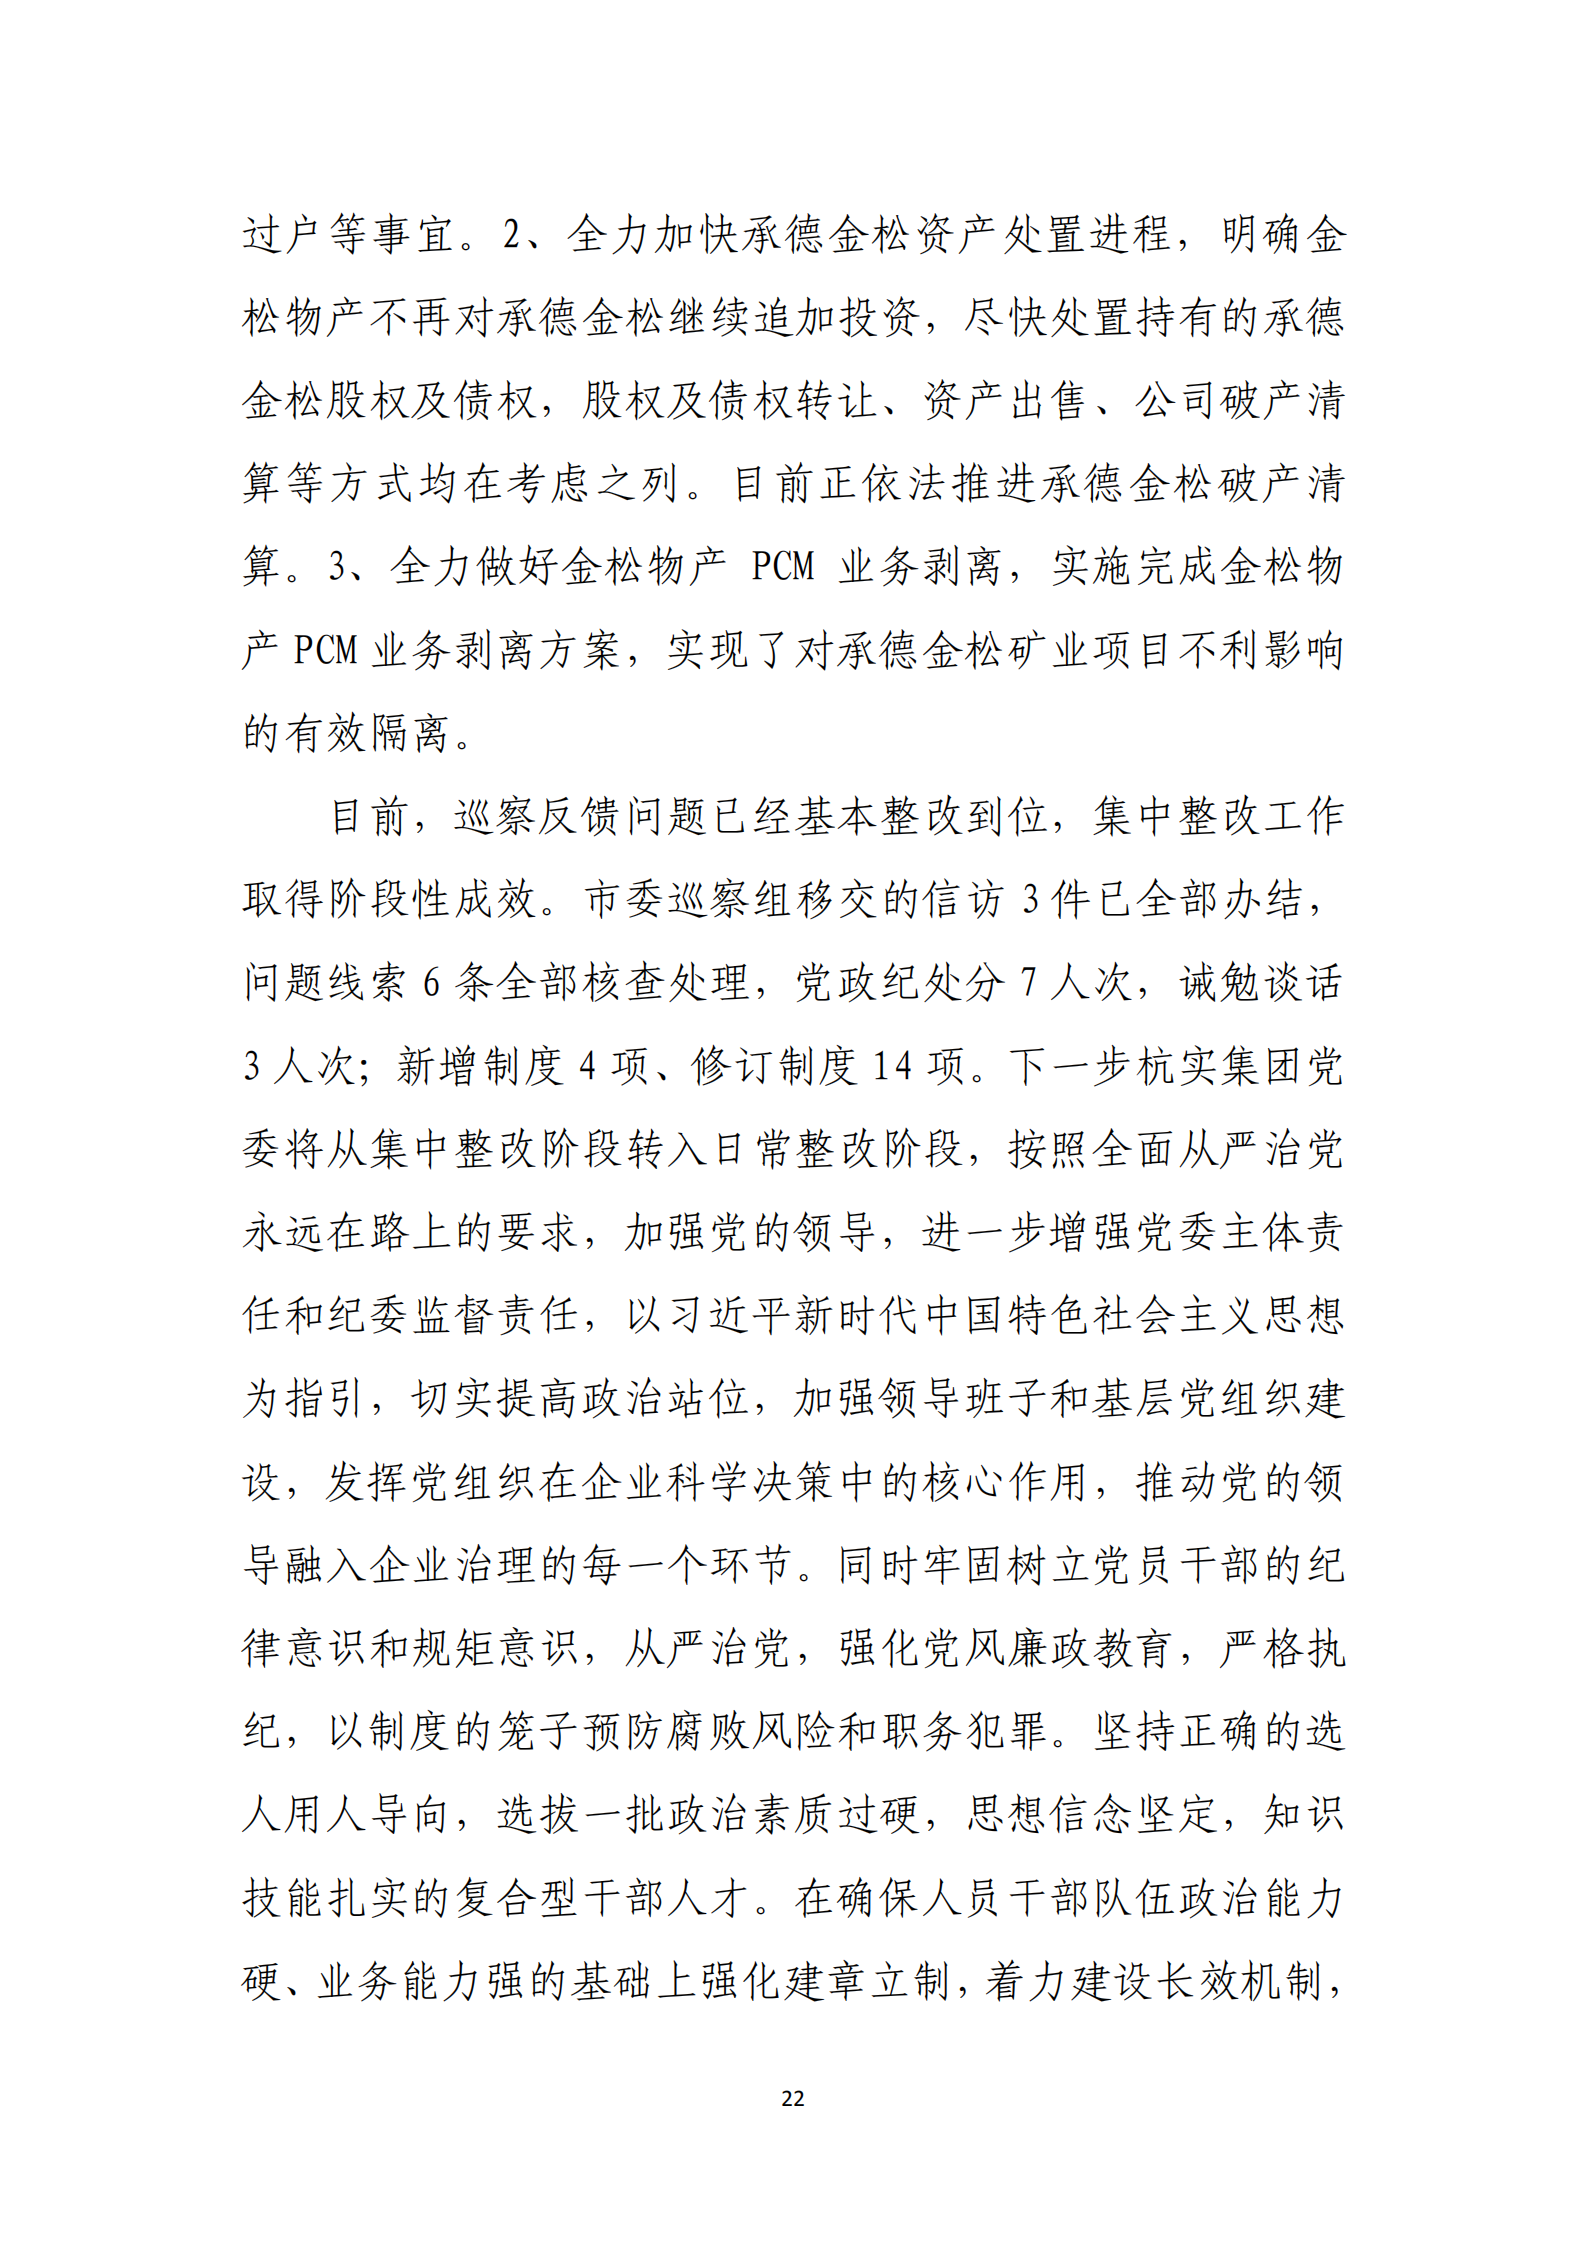 杭实集团党委关于巡察整改情况的通报_21.png